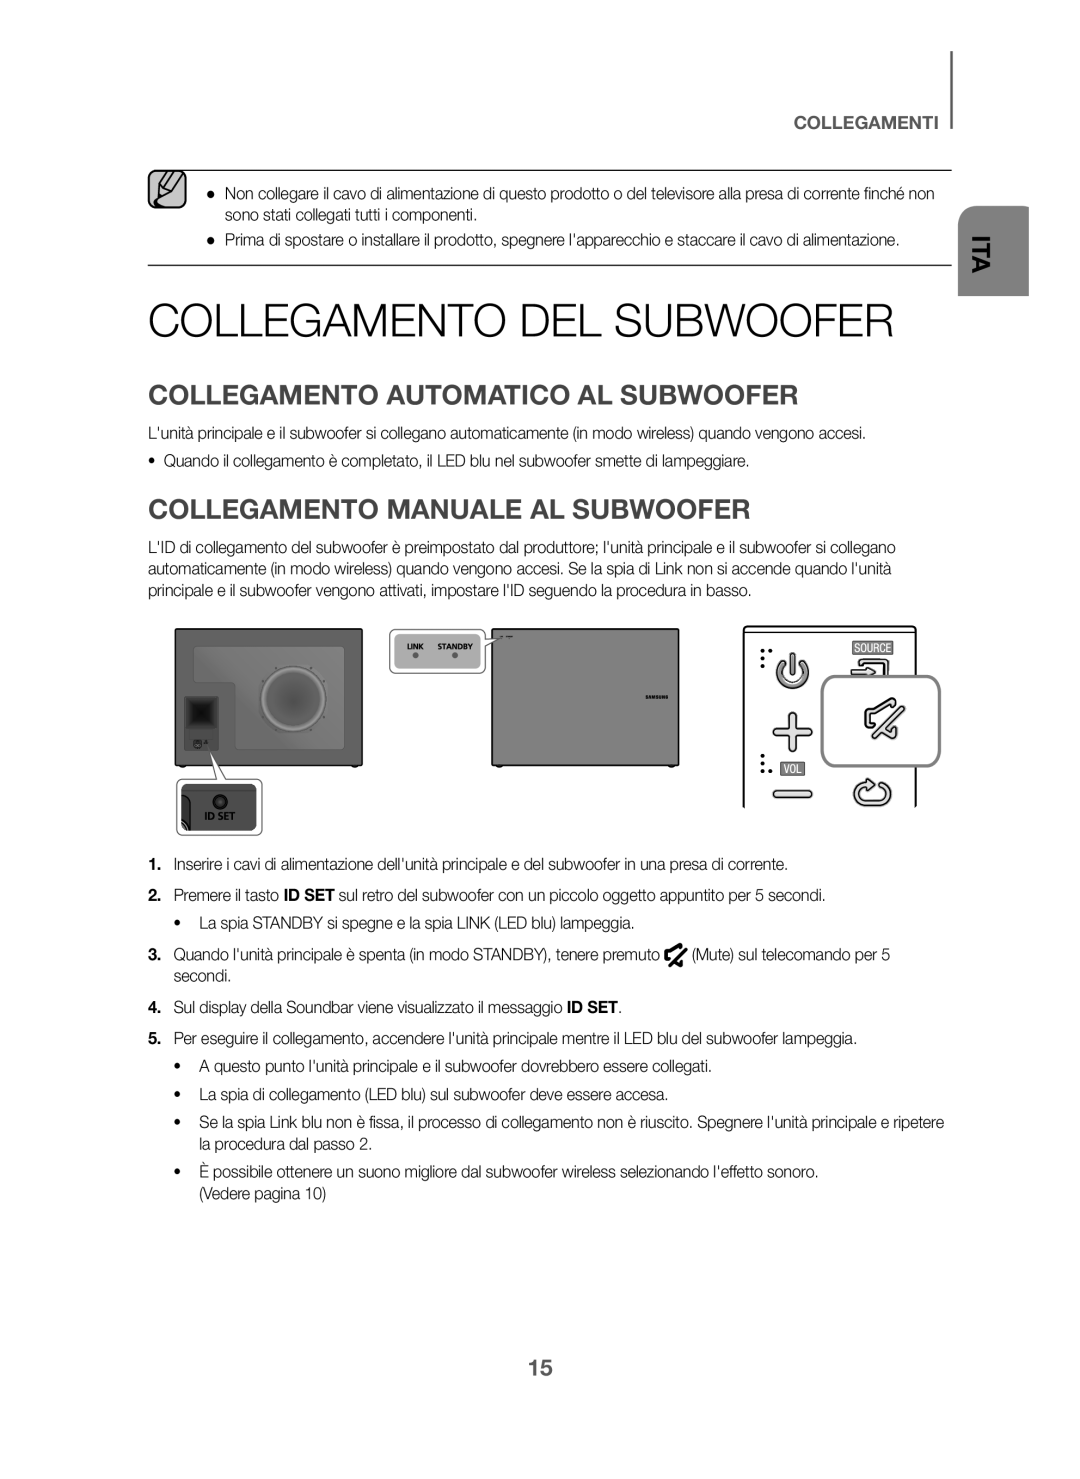 Samsung HW-J6000/ZF Collegamento DEL Subwoofer, Collegamento Automatico AL Subwoofer, Collegamento Manuale AL Subwoofer 